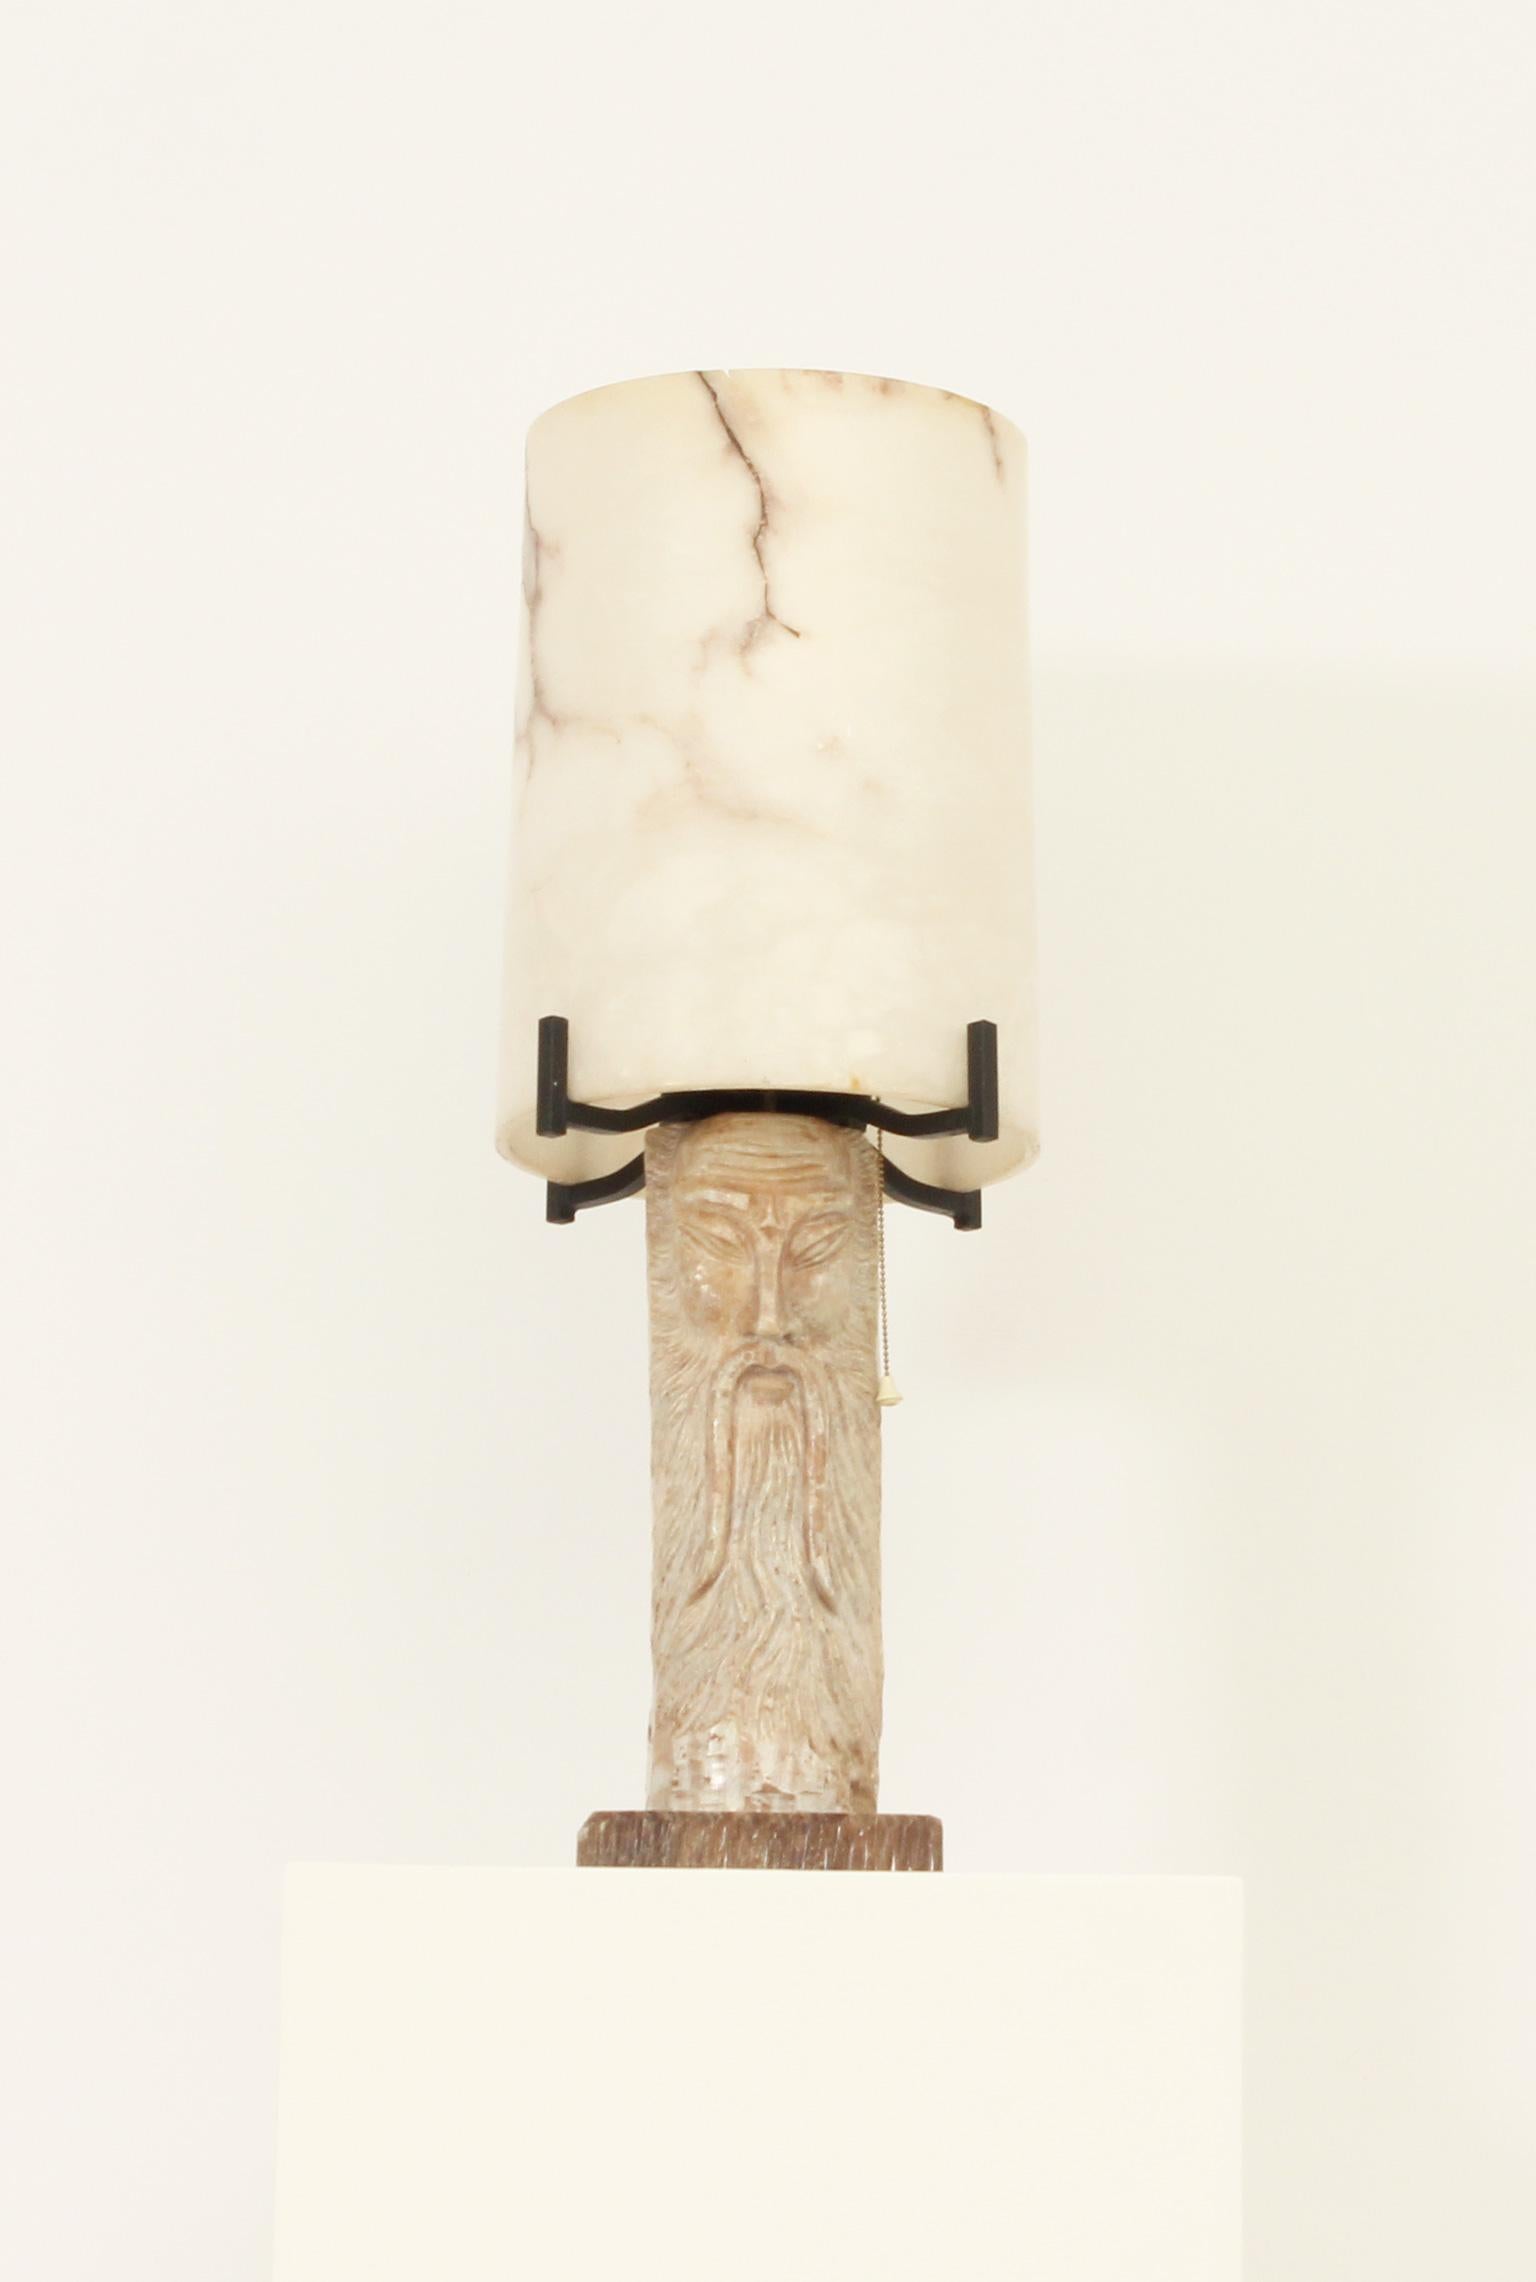 Große Alabaster-Tischlampe aus den 1950er Jahren, Spanien. Bestehend aus zwei Teilen aus geschnitztem Alabaster  und Steinsockel mit schwarzem Schmiedeeisen. Interessanter Lichteffekt, wenn die Lampe eingeschaltet ist.